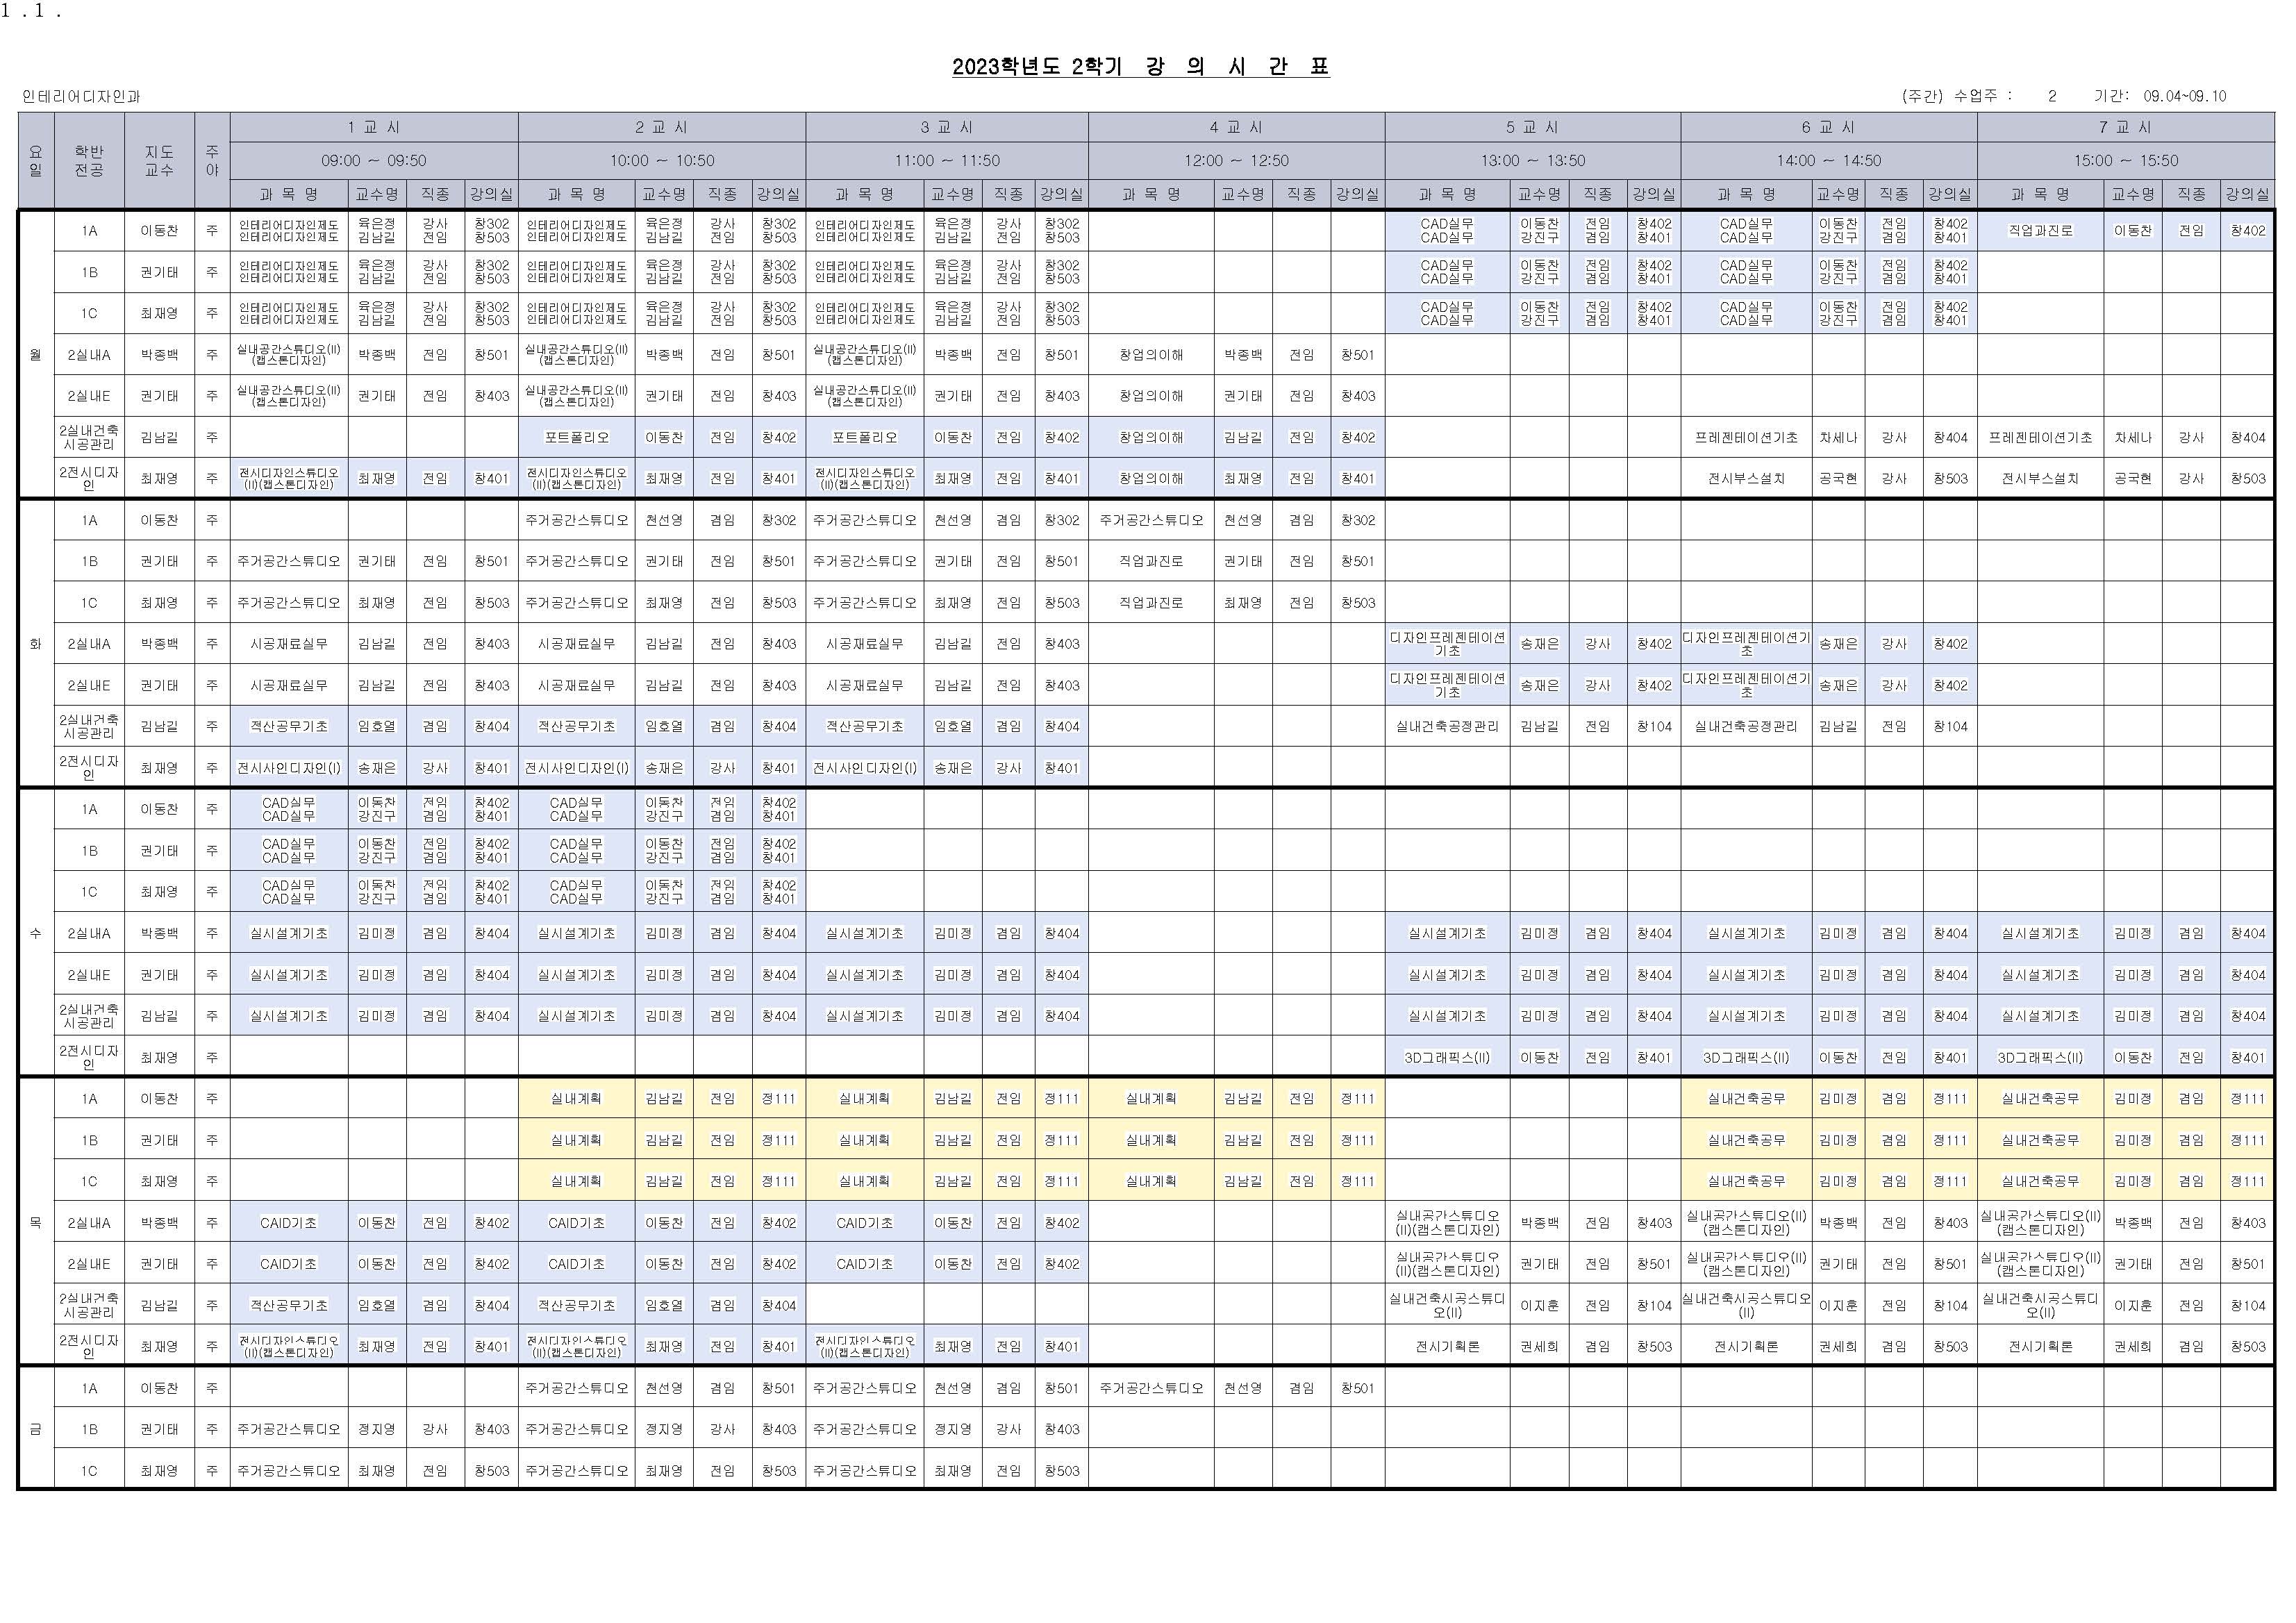 2023-2학기 수업시간표 (인테리어).jpg